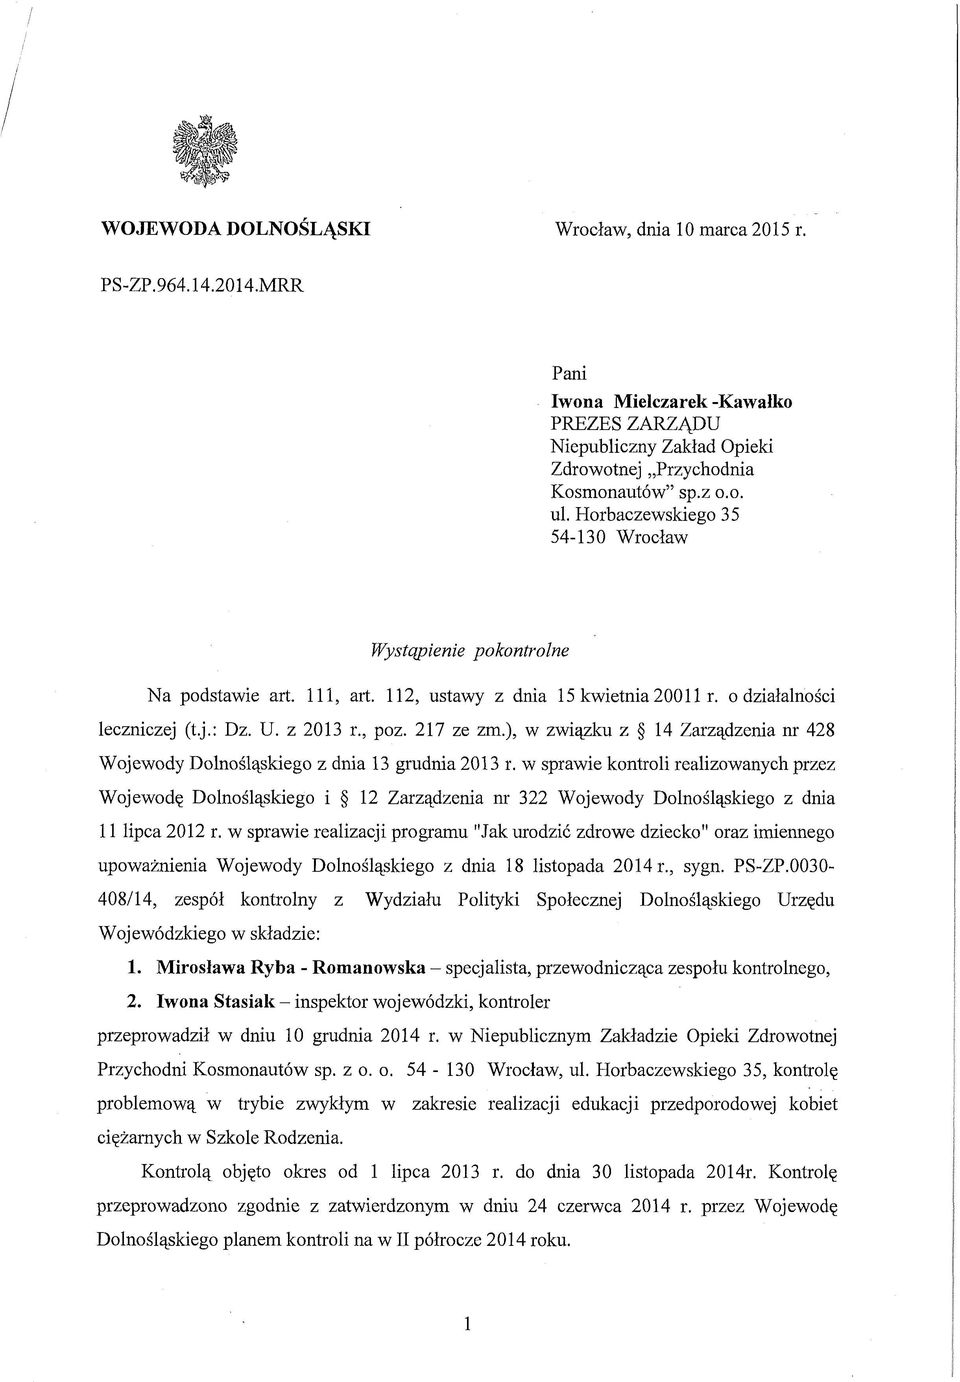 ), w związku z 14 Zarządzenia nr 428 Wojewody Dolnośląskiego z dnia 13 grudnia 2013 r.